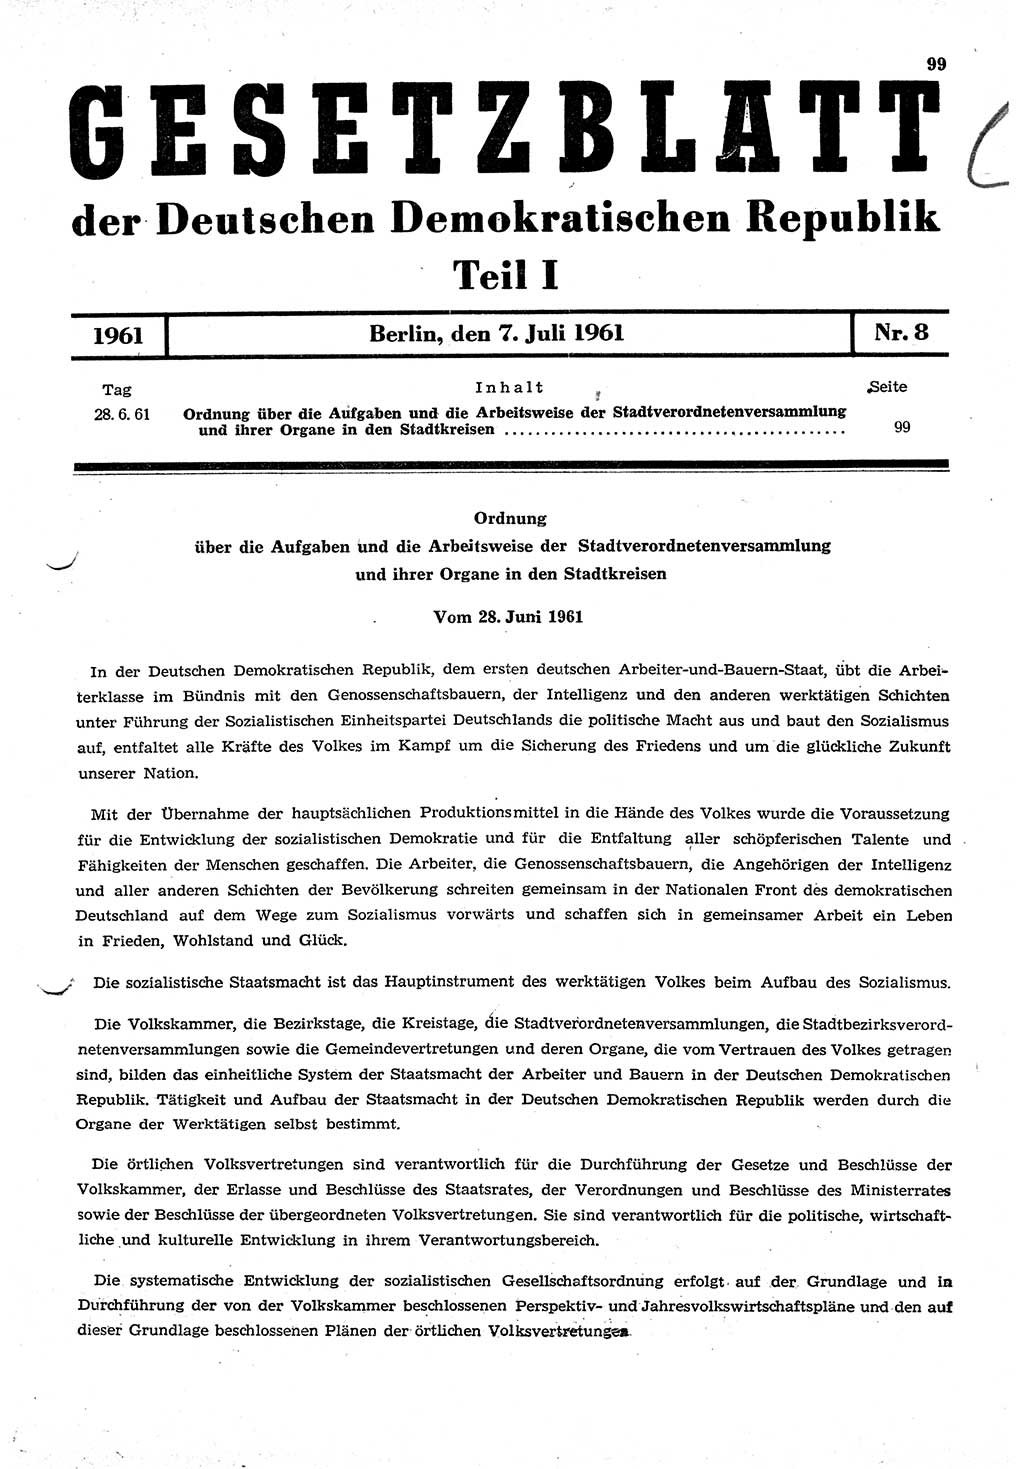 Gesetzblatt (GBl.) der Deutschen Demokratischen Republik (DDR) Teil Ⅰ 1961, Seite 99 (GBl. DDR Ⅰ 1961, S. 99)